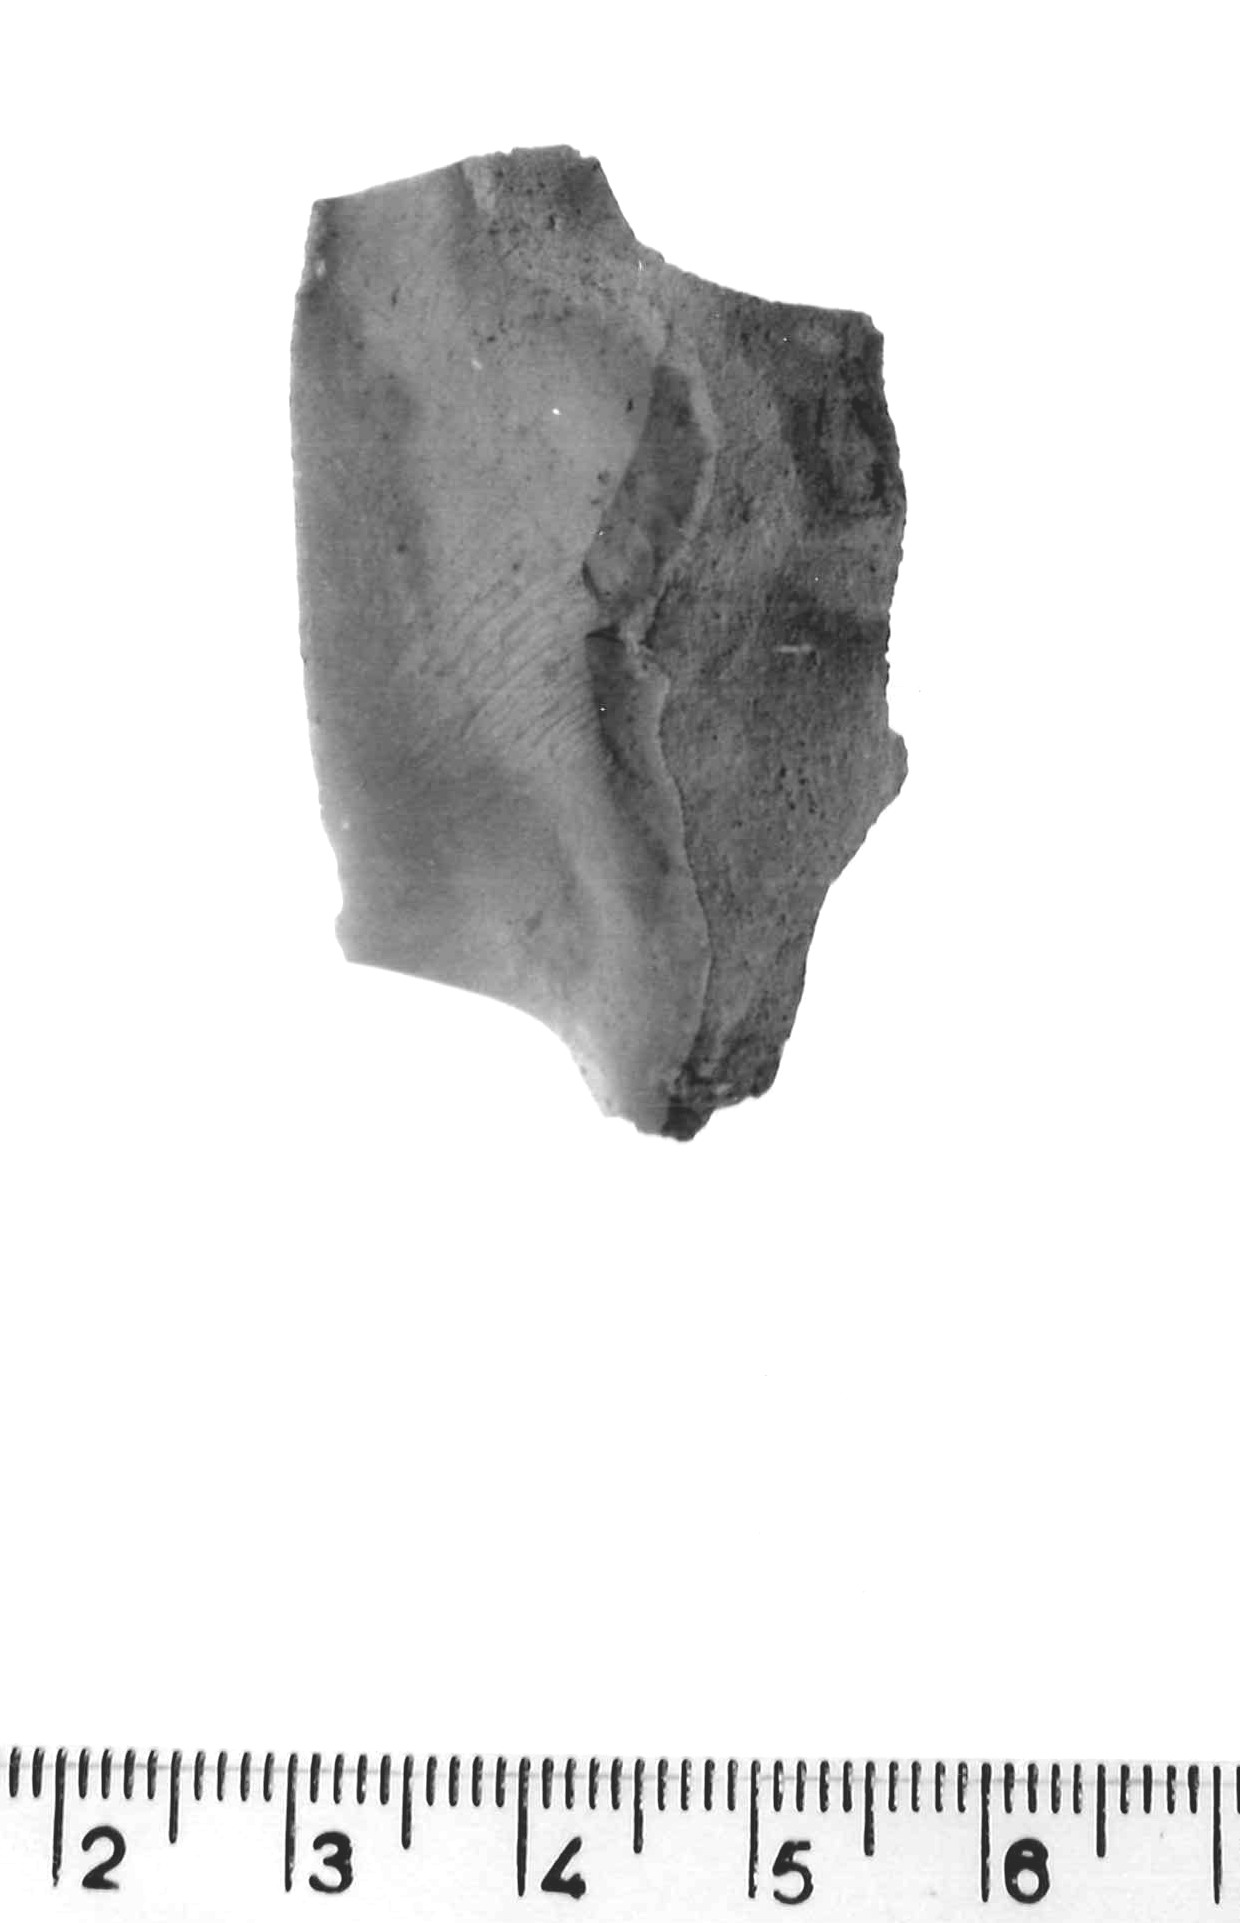 scheggia a ritocco erto profondo - epigravettiano antico (paleolitico superiore)